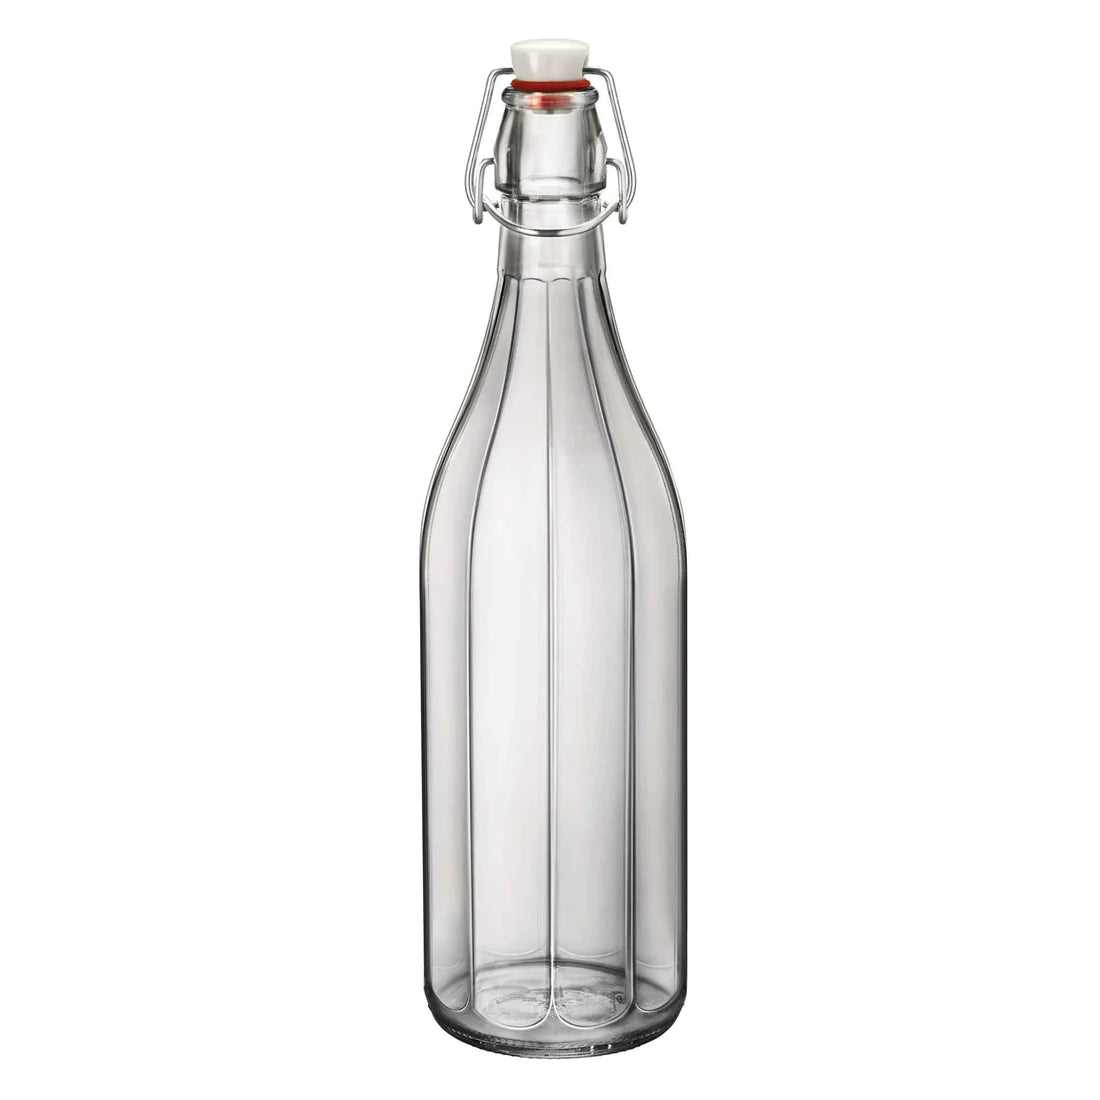 Oxford Swing Top Glass Bottle